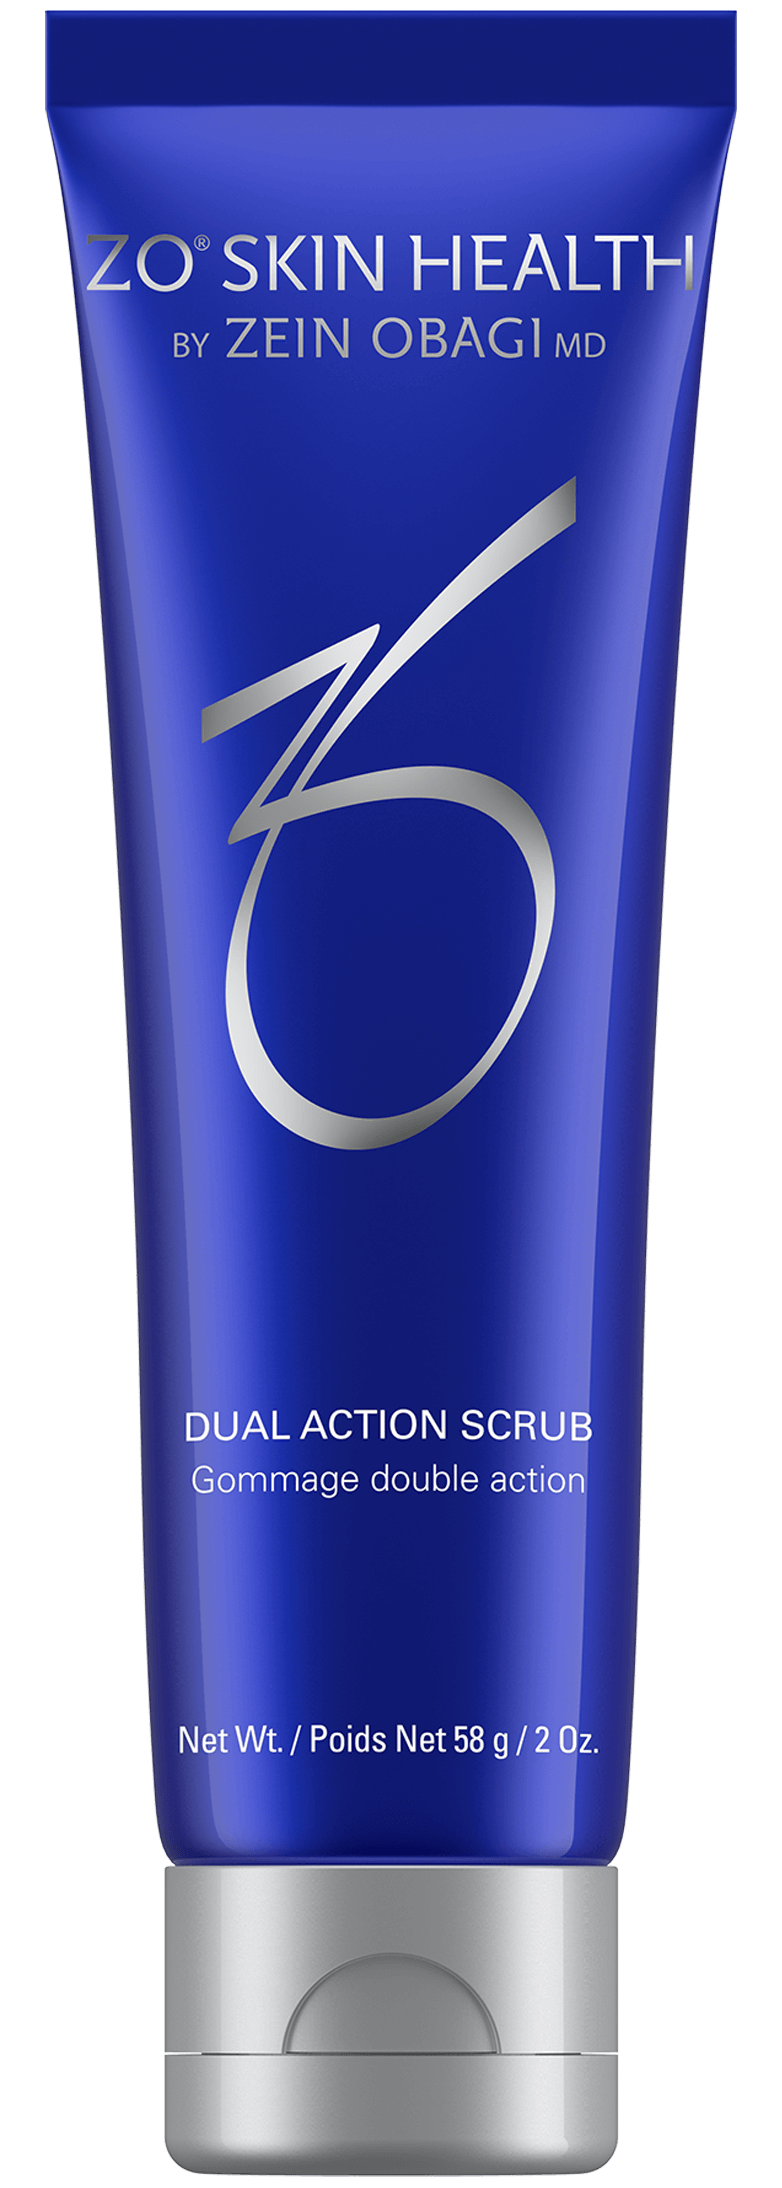 ZO Dual Action Scrub